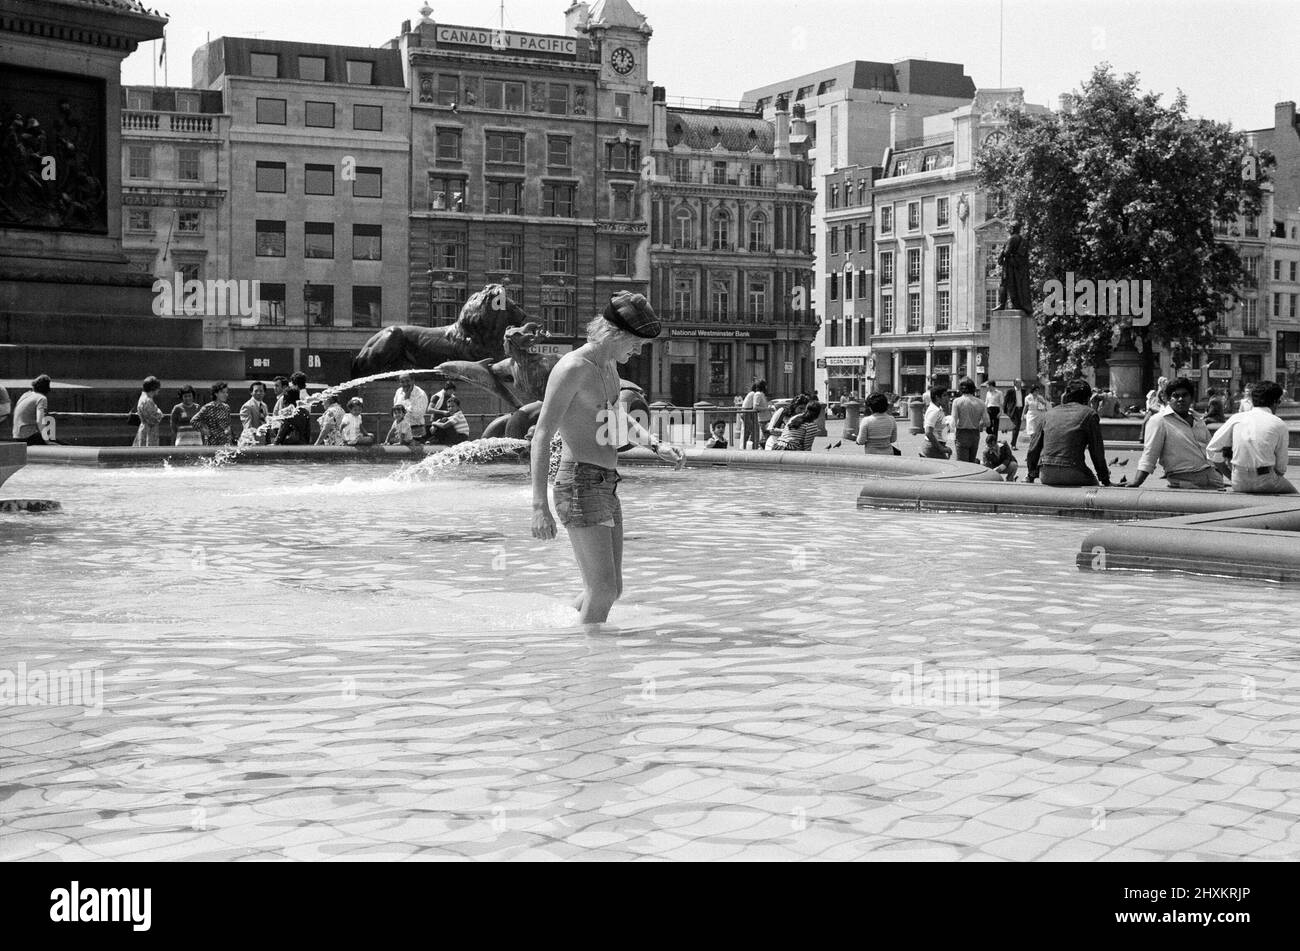 Hitzewelle am Trafalgar Square, London. Als die Temperaturen heute wieder in die 80s Grad aufstiegen, verlockten die kühlen Springbrunnen auf dem Trafalgar Square die Menschen, die um sie herum saßen, noch mehr und inspirierten das Gesetz, das besagt, dass es illegal ist, darin zu baden. 13.. Juni 1976. Stockfoto